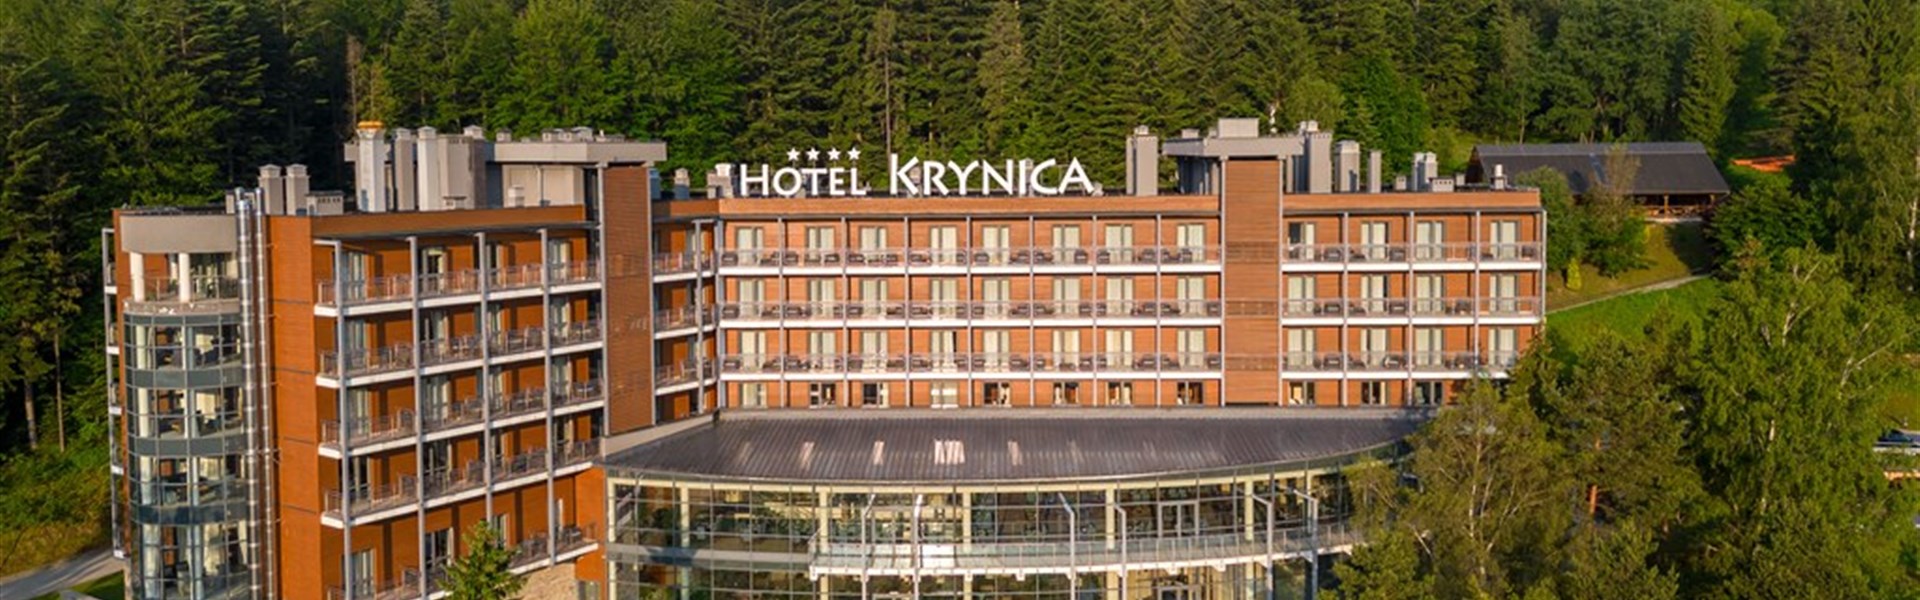 Hotel Krynica - 